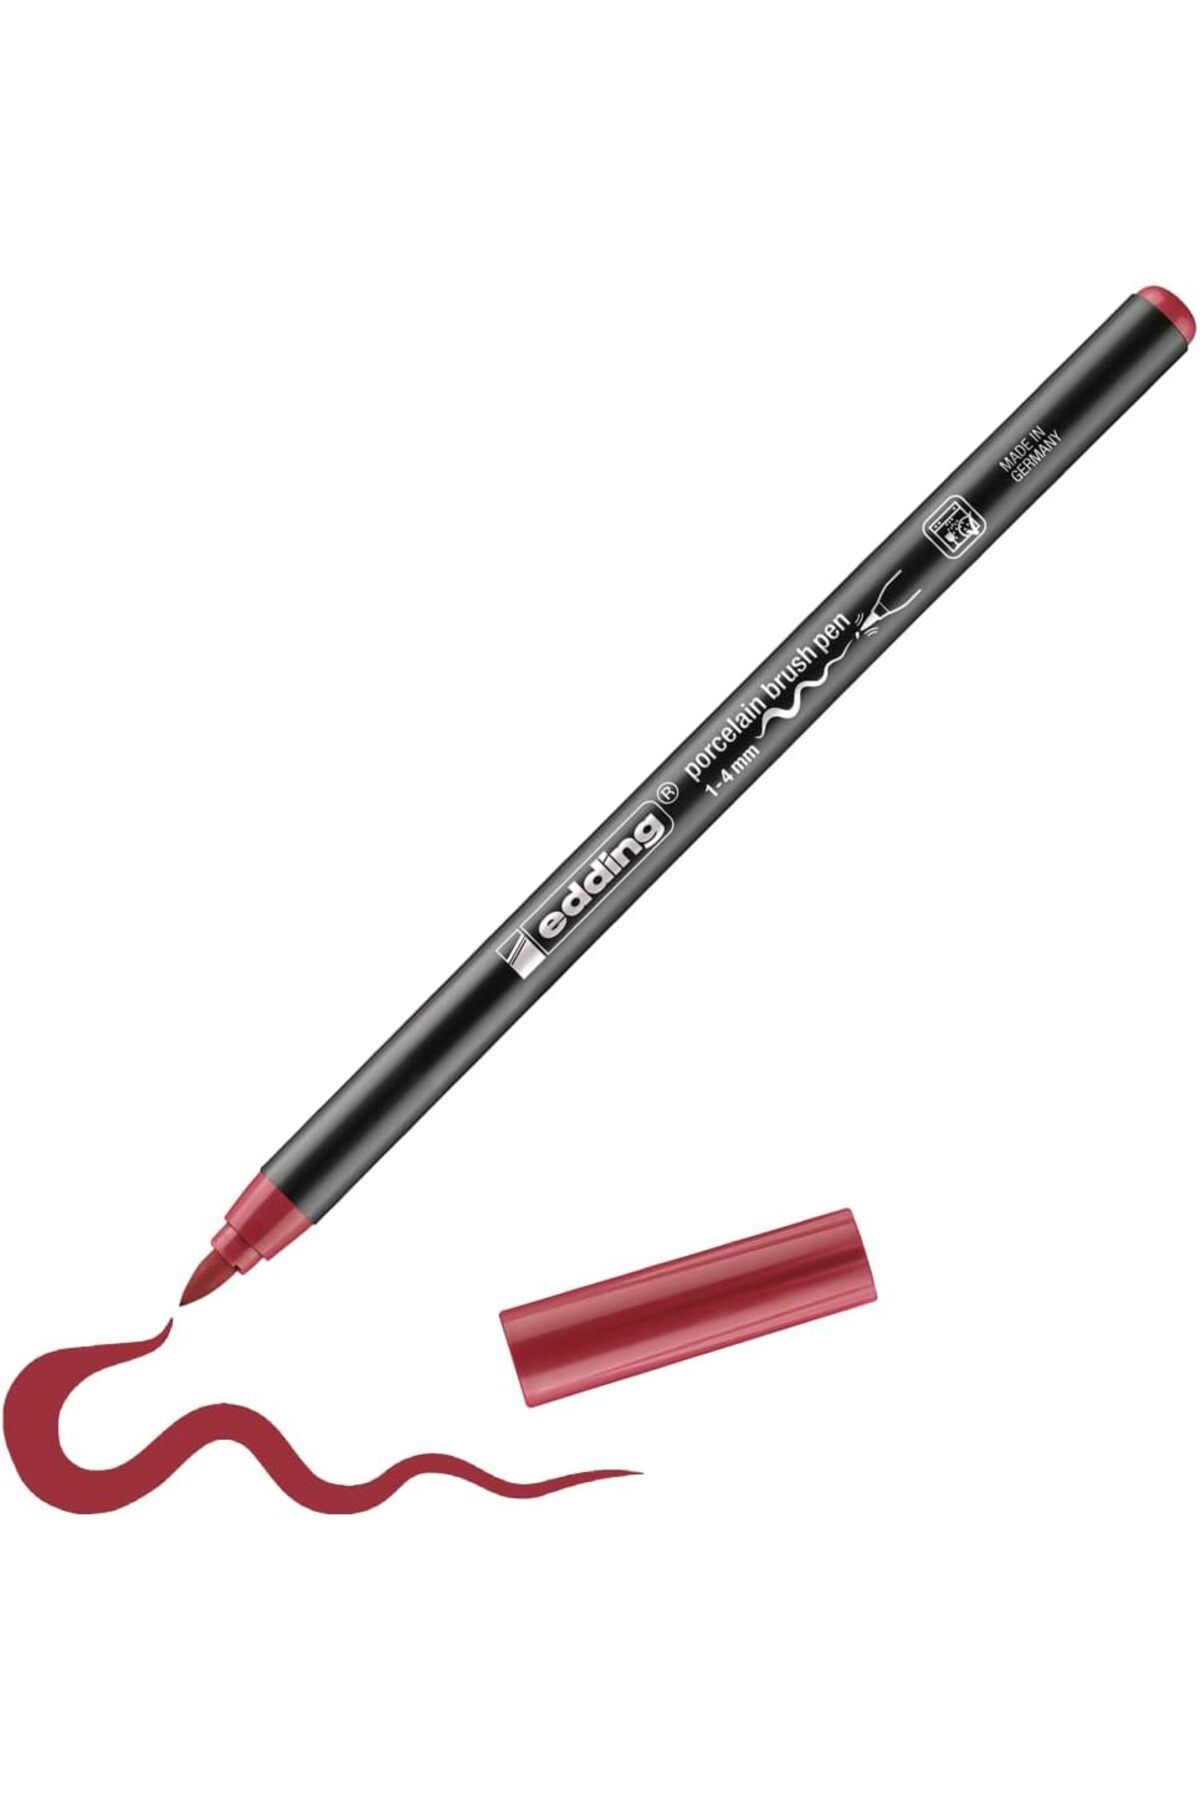 Edding 4200 Fırça Uçlu Porselen Kalemi 1-4mm – Karmina Kırmızısı